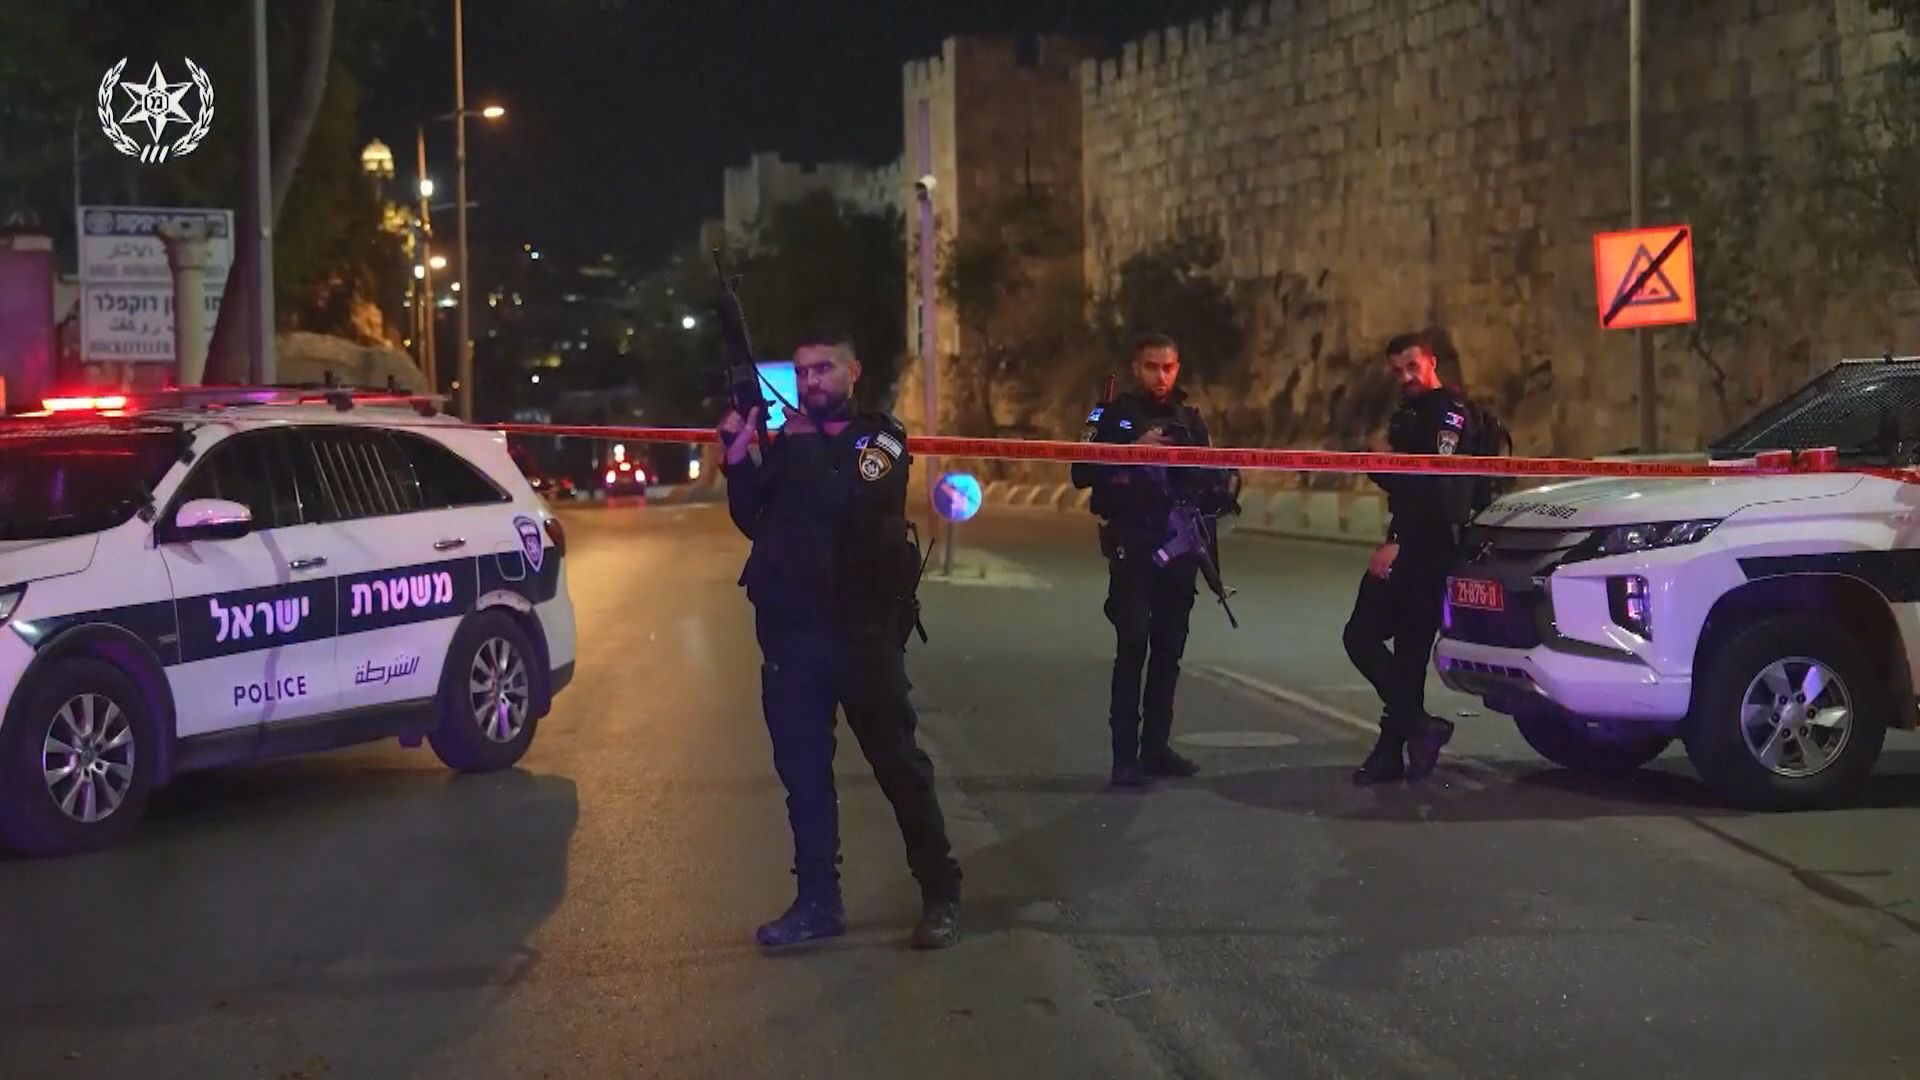 耶路撒冷有以色列警察遭巴人襲擊 槍手被當場擊斃